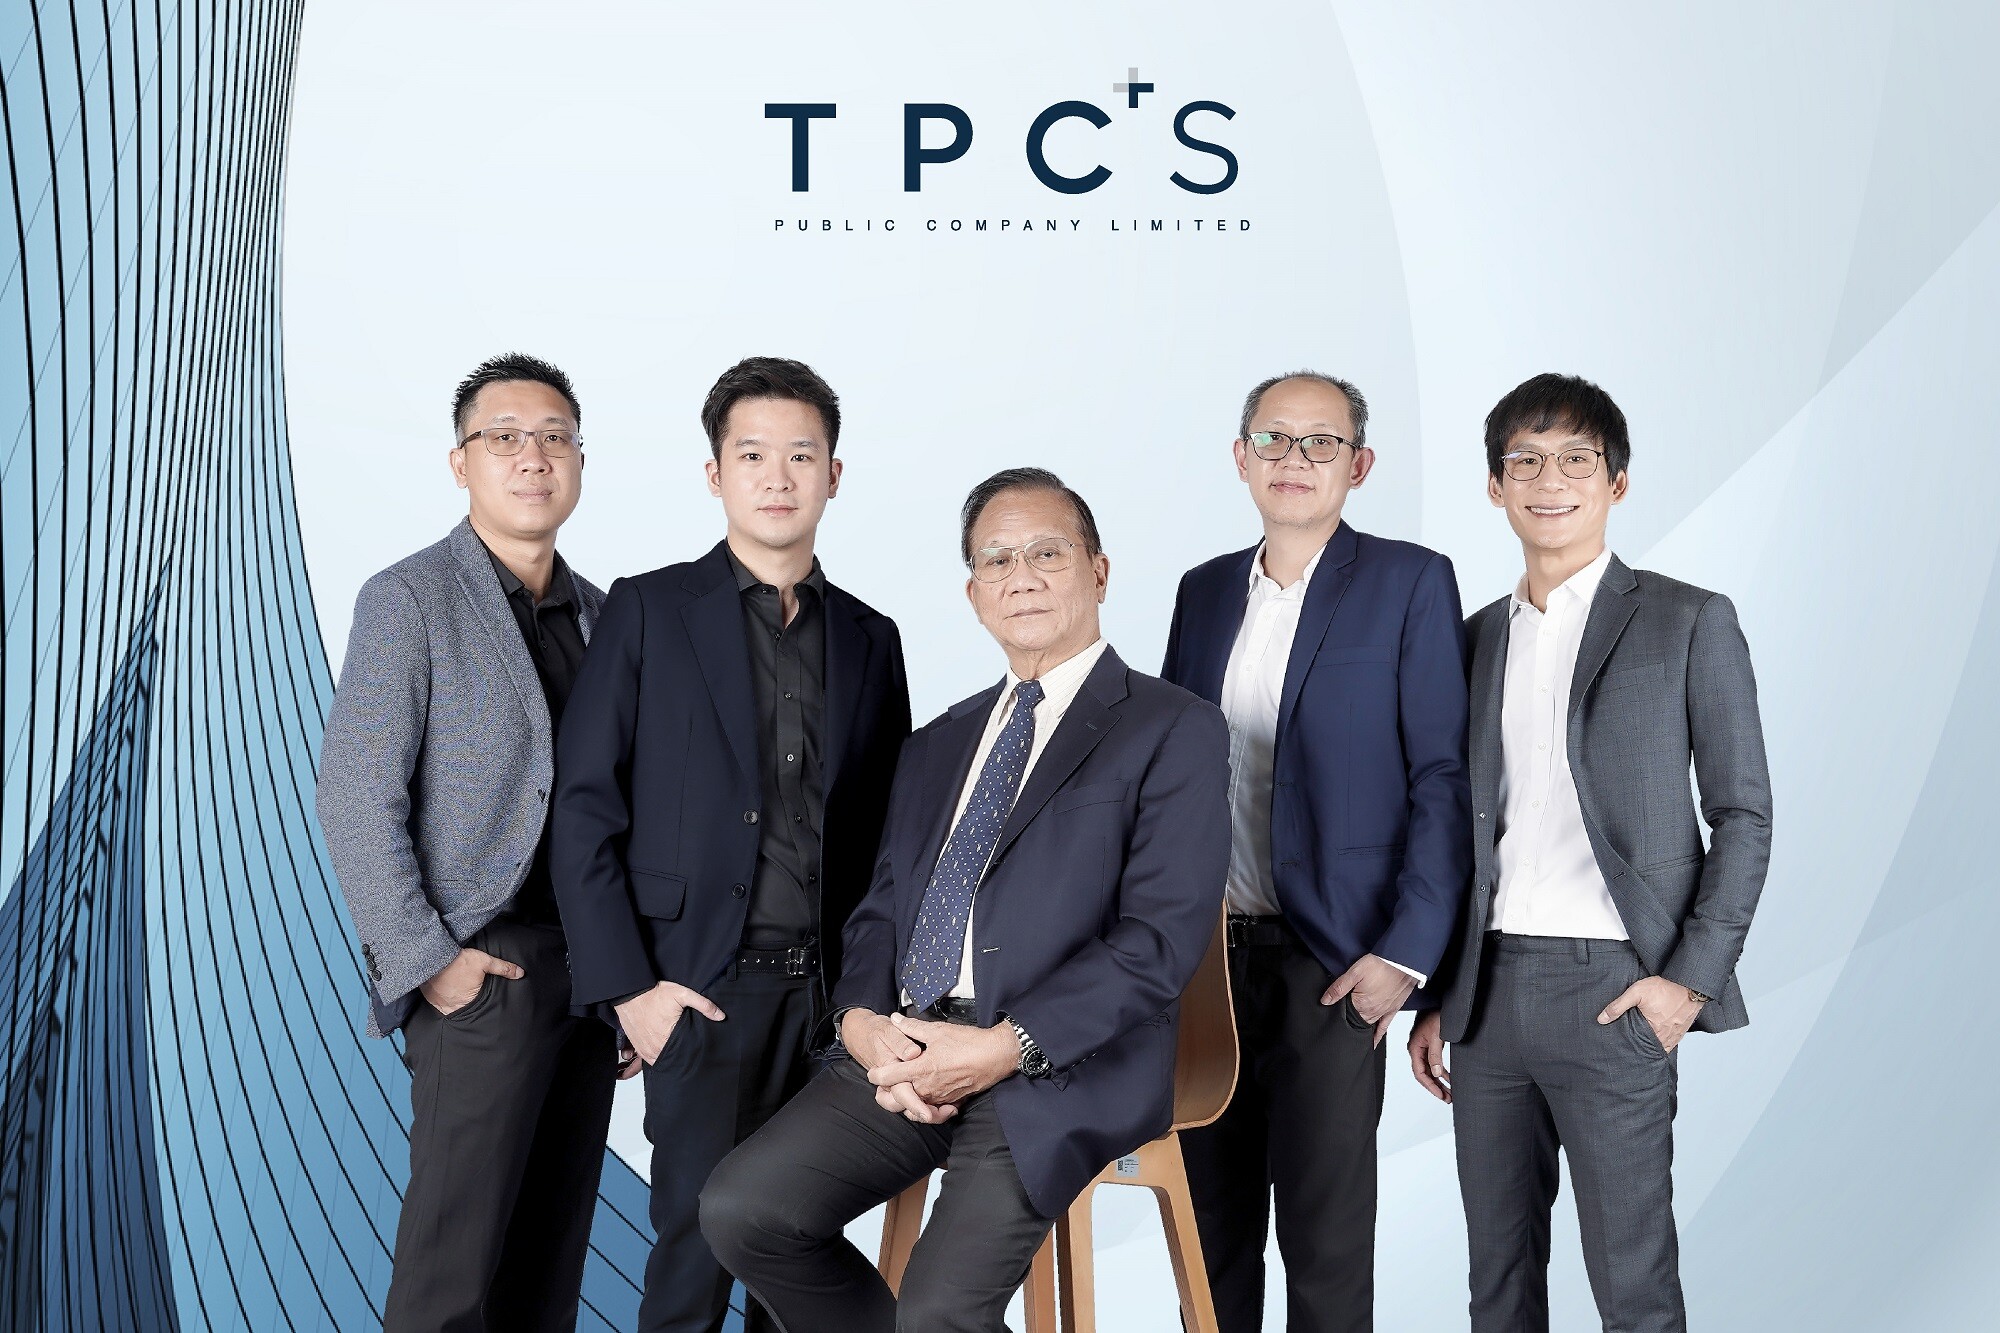 "TPCS" แต่งตั้งกรรมการบริษัทใหม่ เสริมทัพธุรกิจนวัตกรรมและเทคโนโลยี